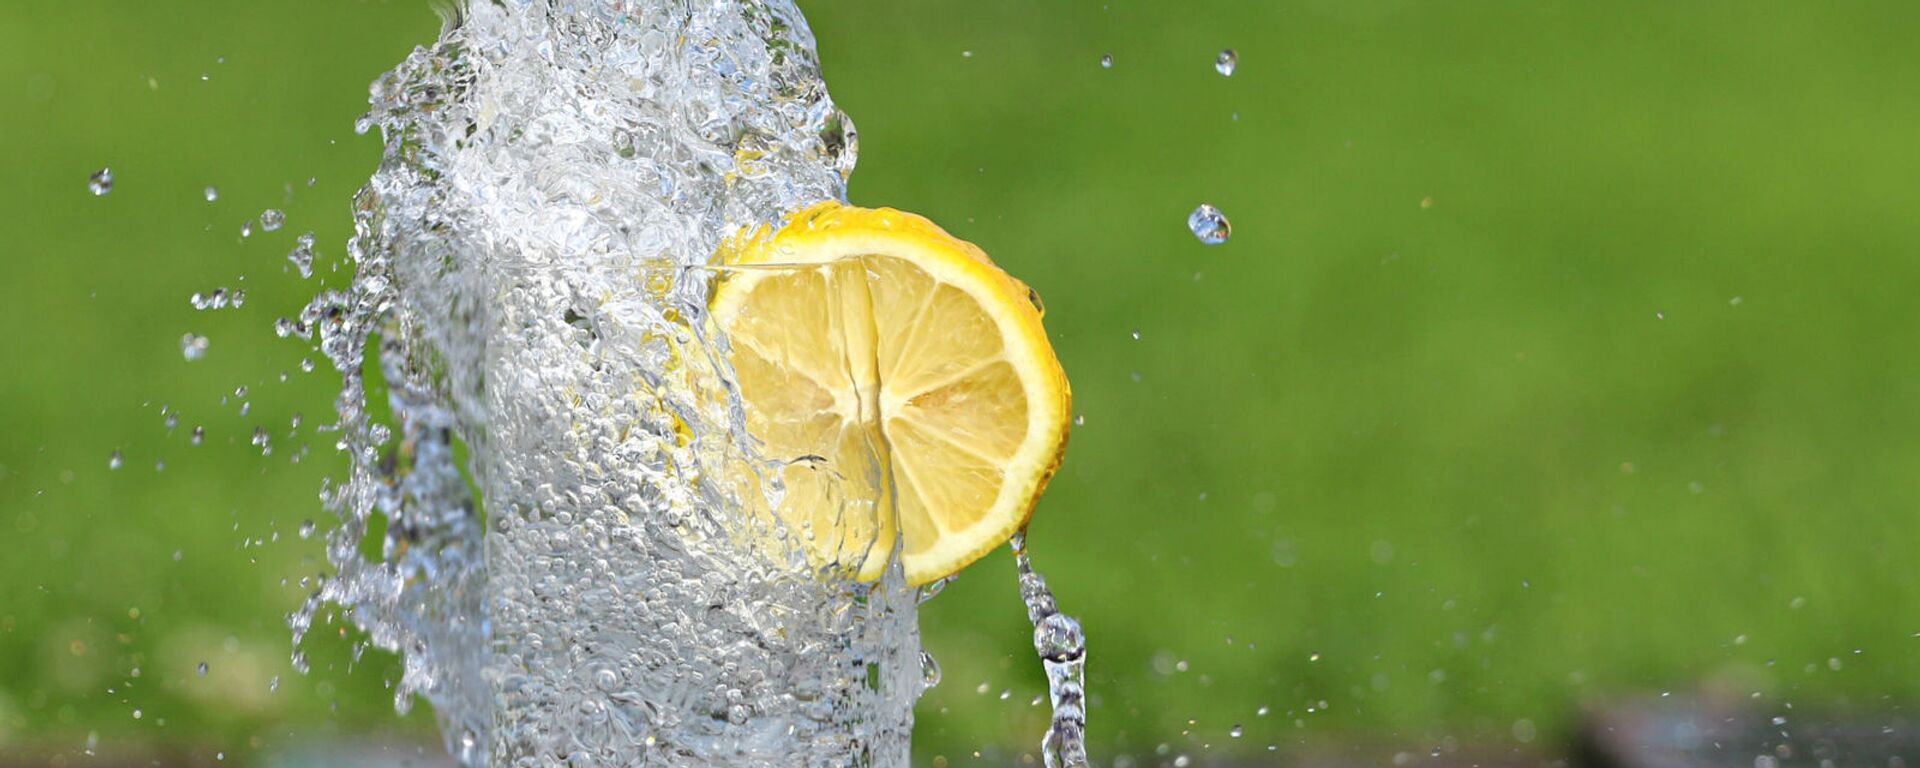 Холодная вода в бокале с долькой лимона - Sputnik Армения, 1920, 04.12.2021